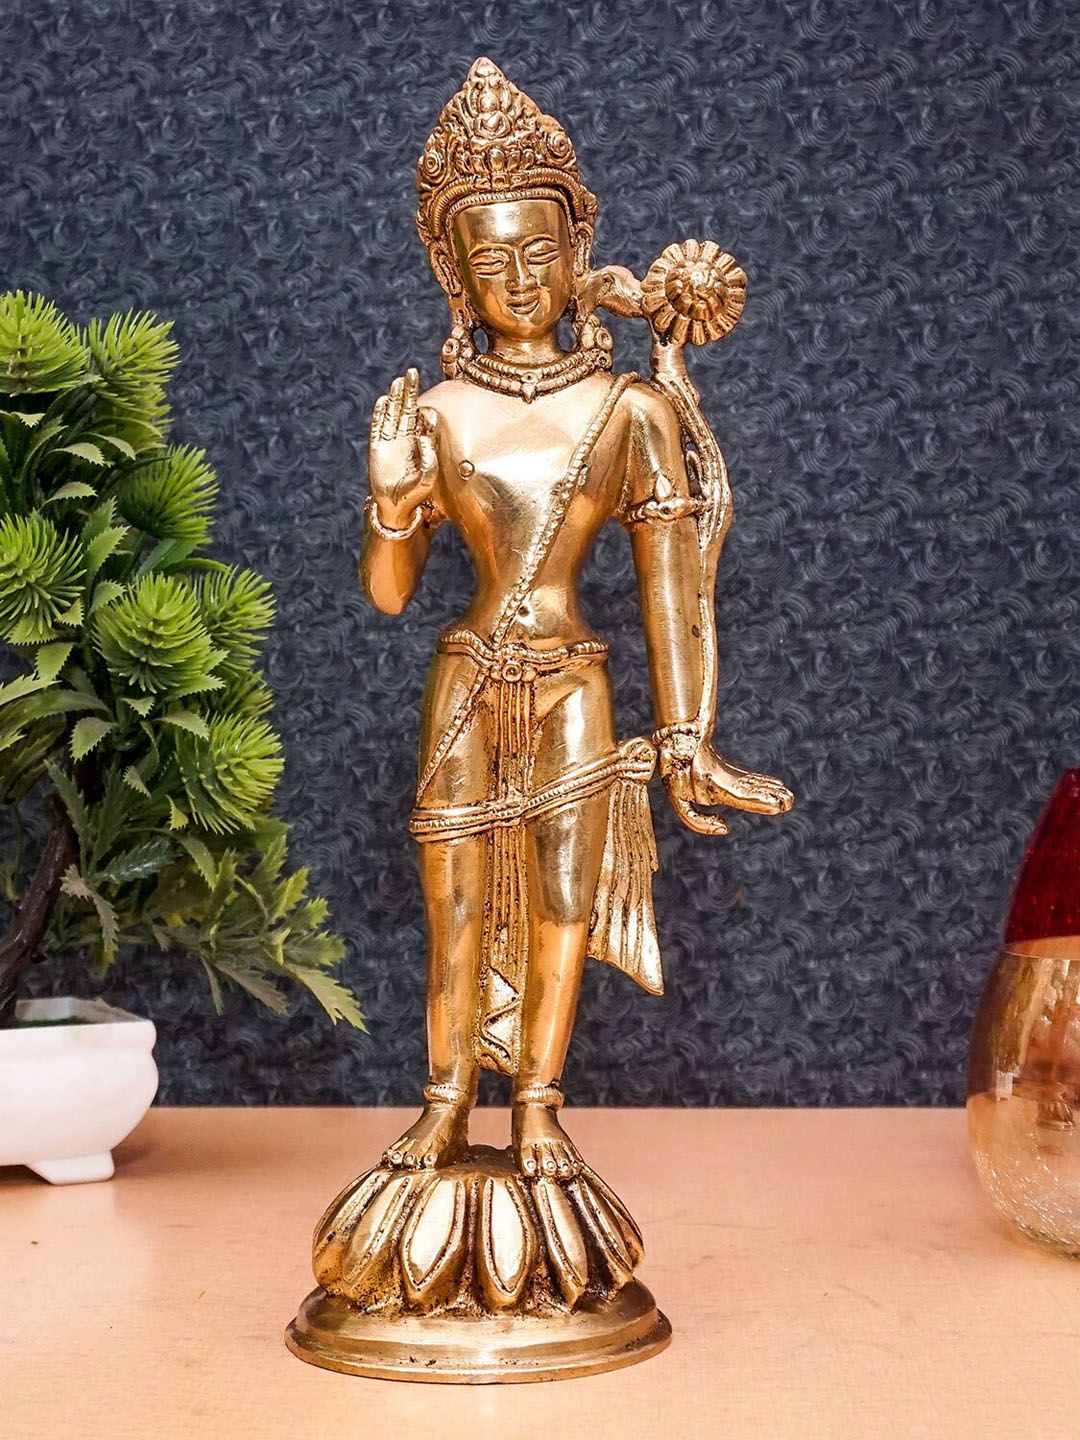 StatueStudio Gold Toned Standing Parvati Figurine Showpieces Price in India